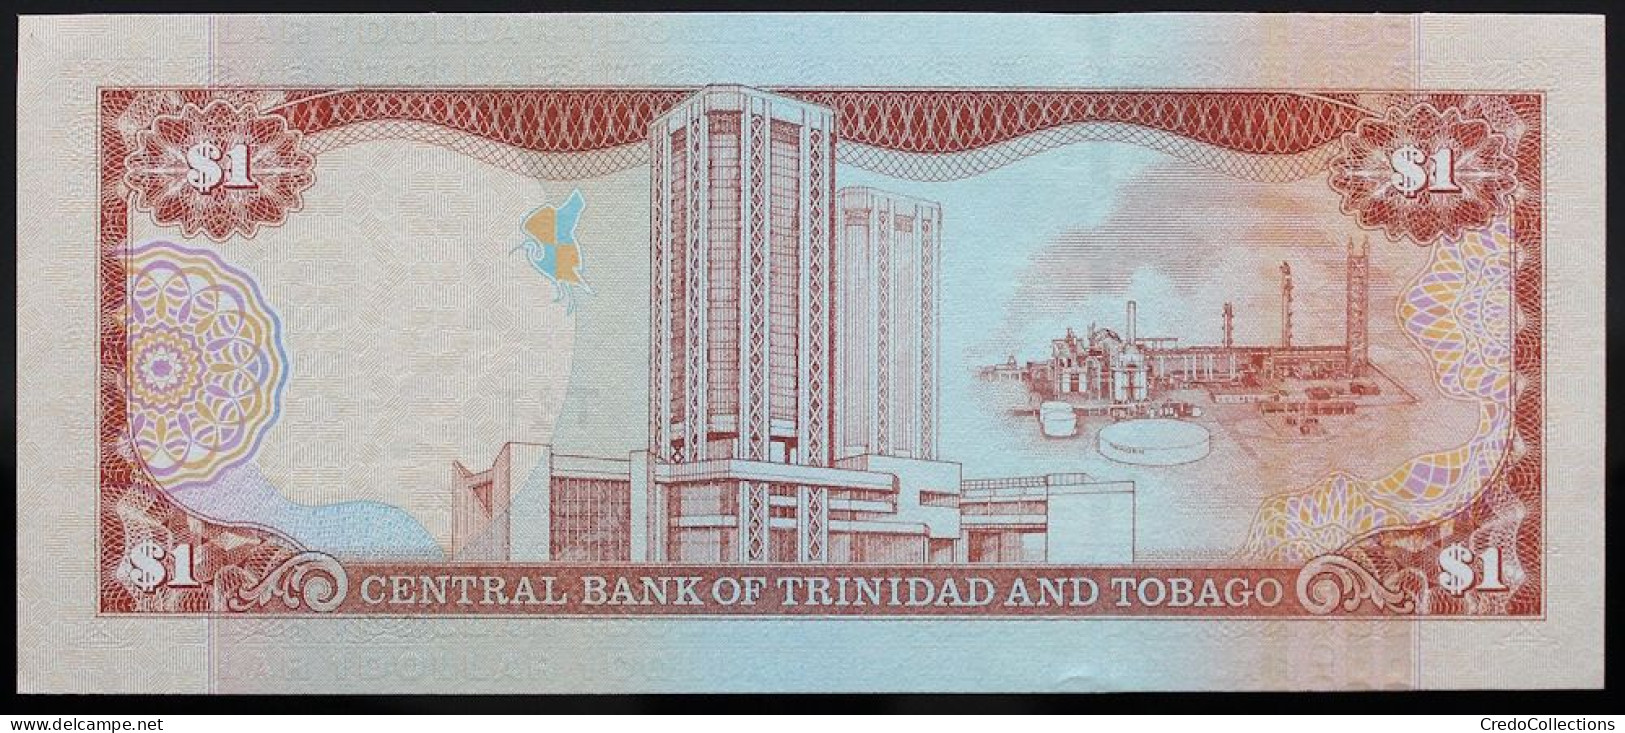 Trinitad Et Tobago - 1 Dollar - 2002 - PICK 41 - NEUF - Trinidad Y Tobago